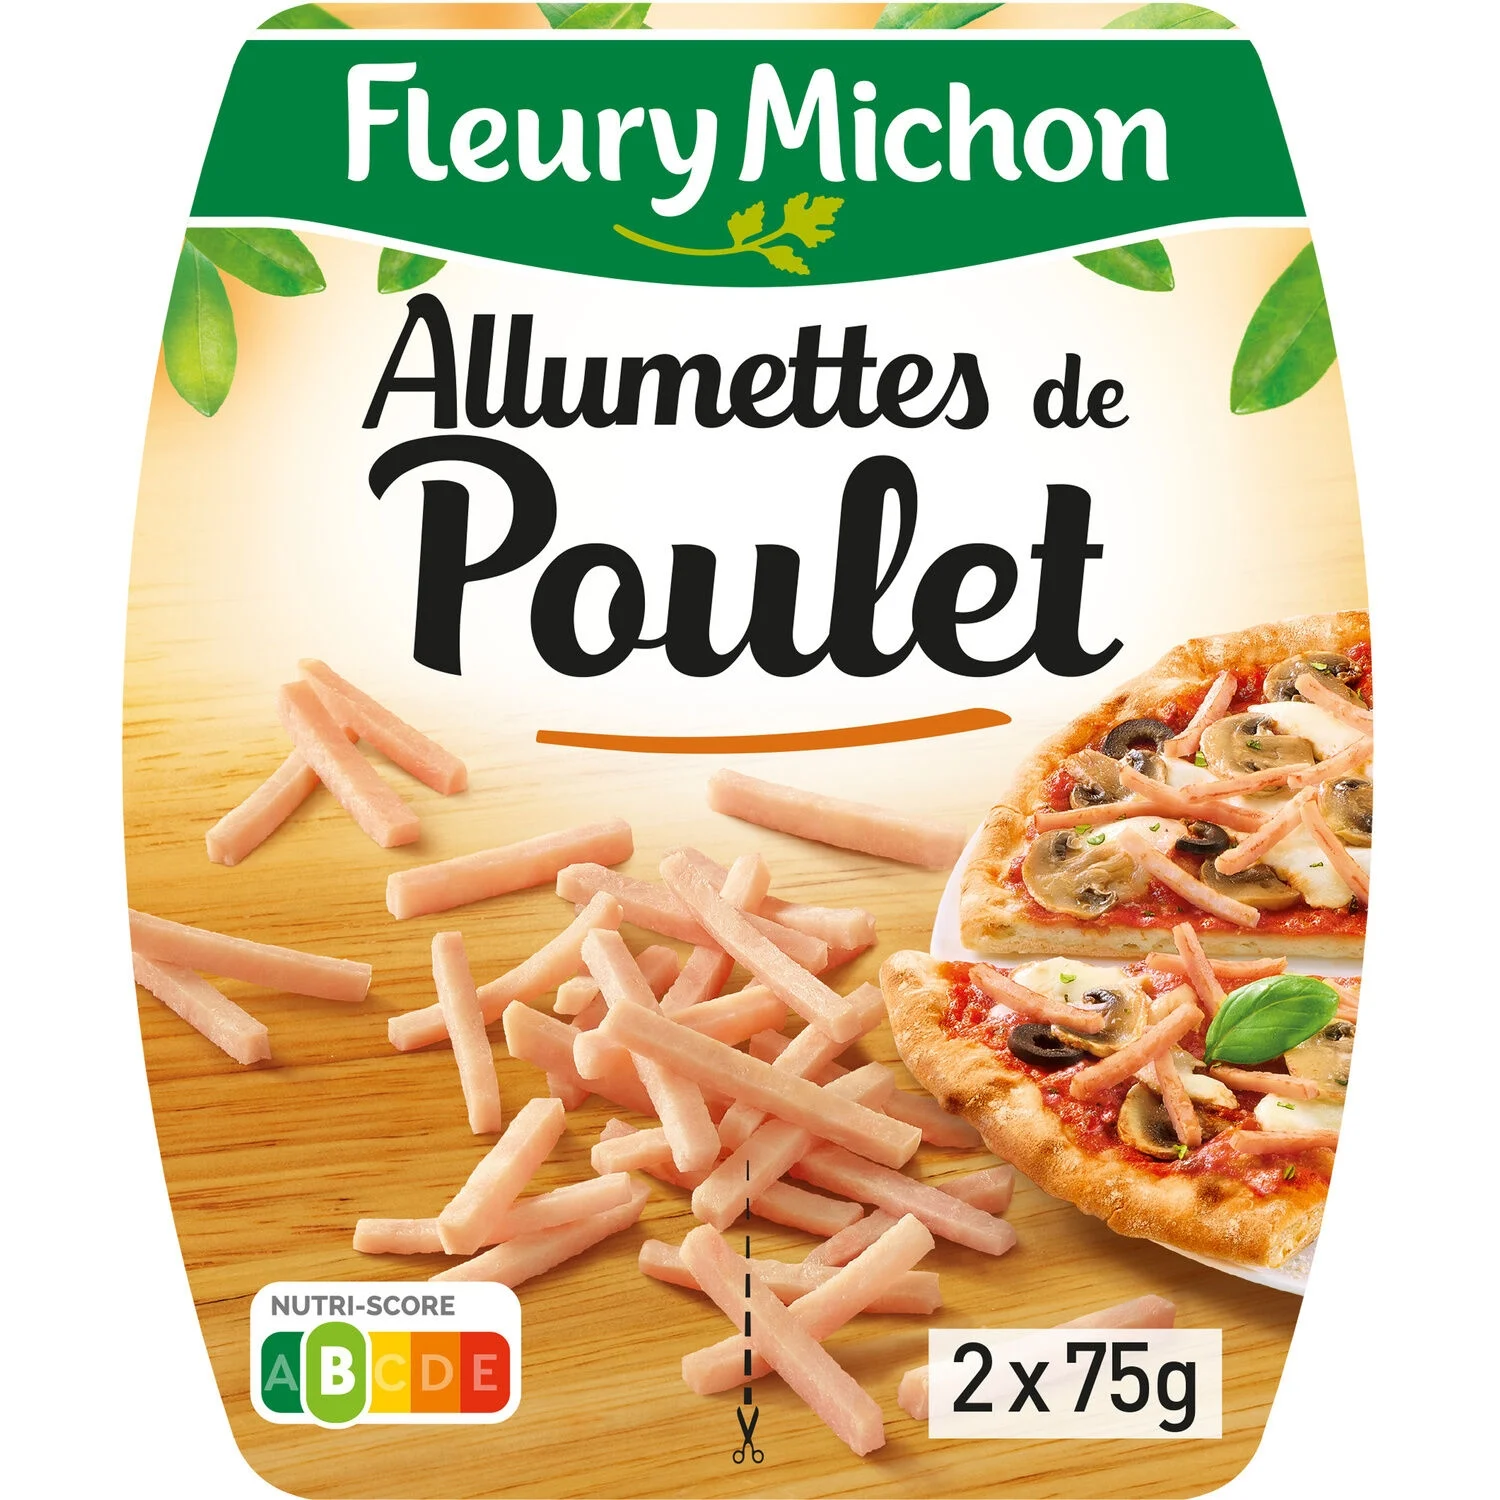 2x75g Allumette Poulet Fleury